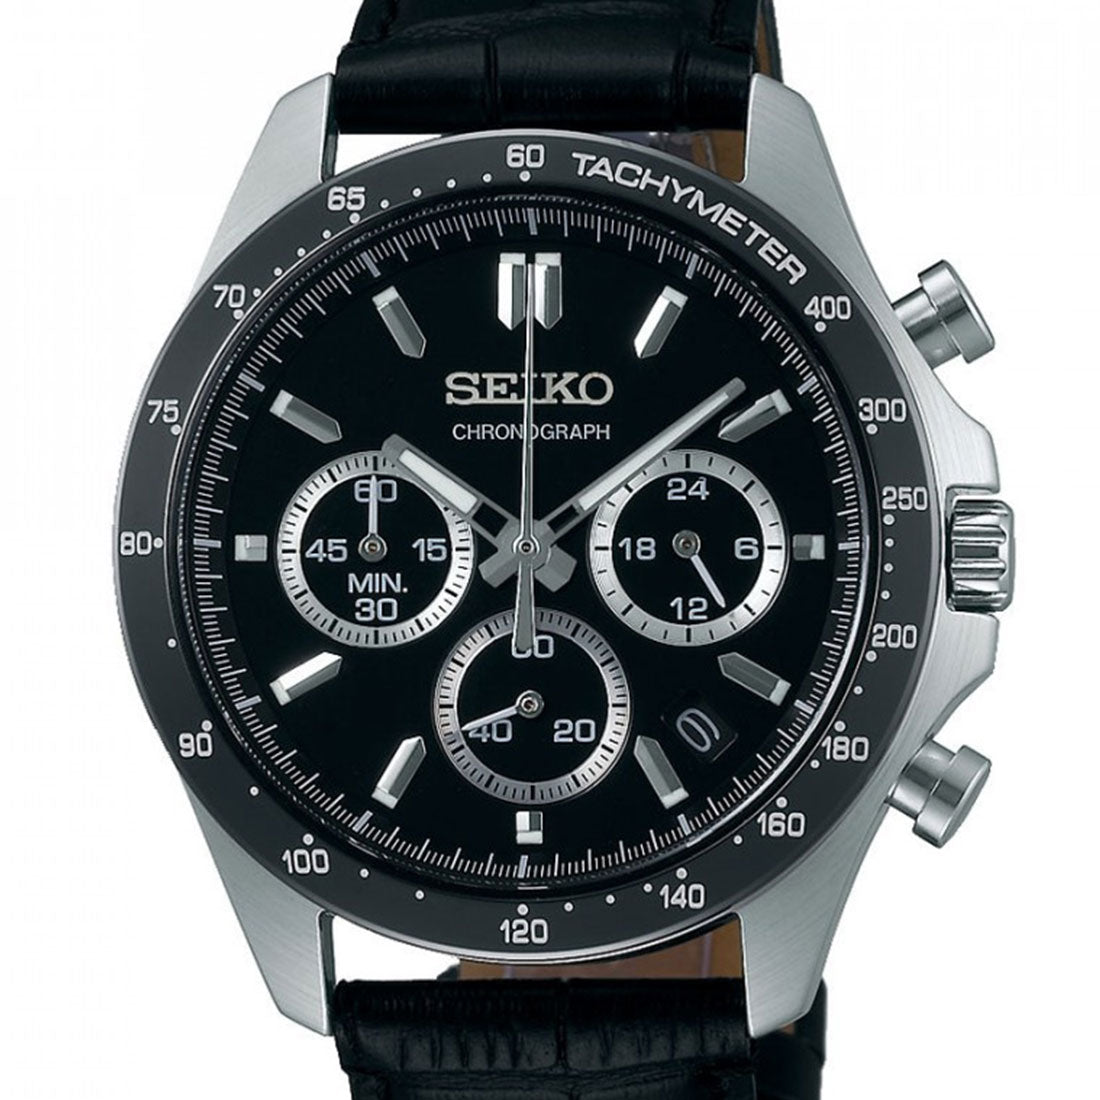 Seiko JDM Spirit Selection SBTR021 Black Dial Chronograph Quartz Mens Leather Watch -Seiko